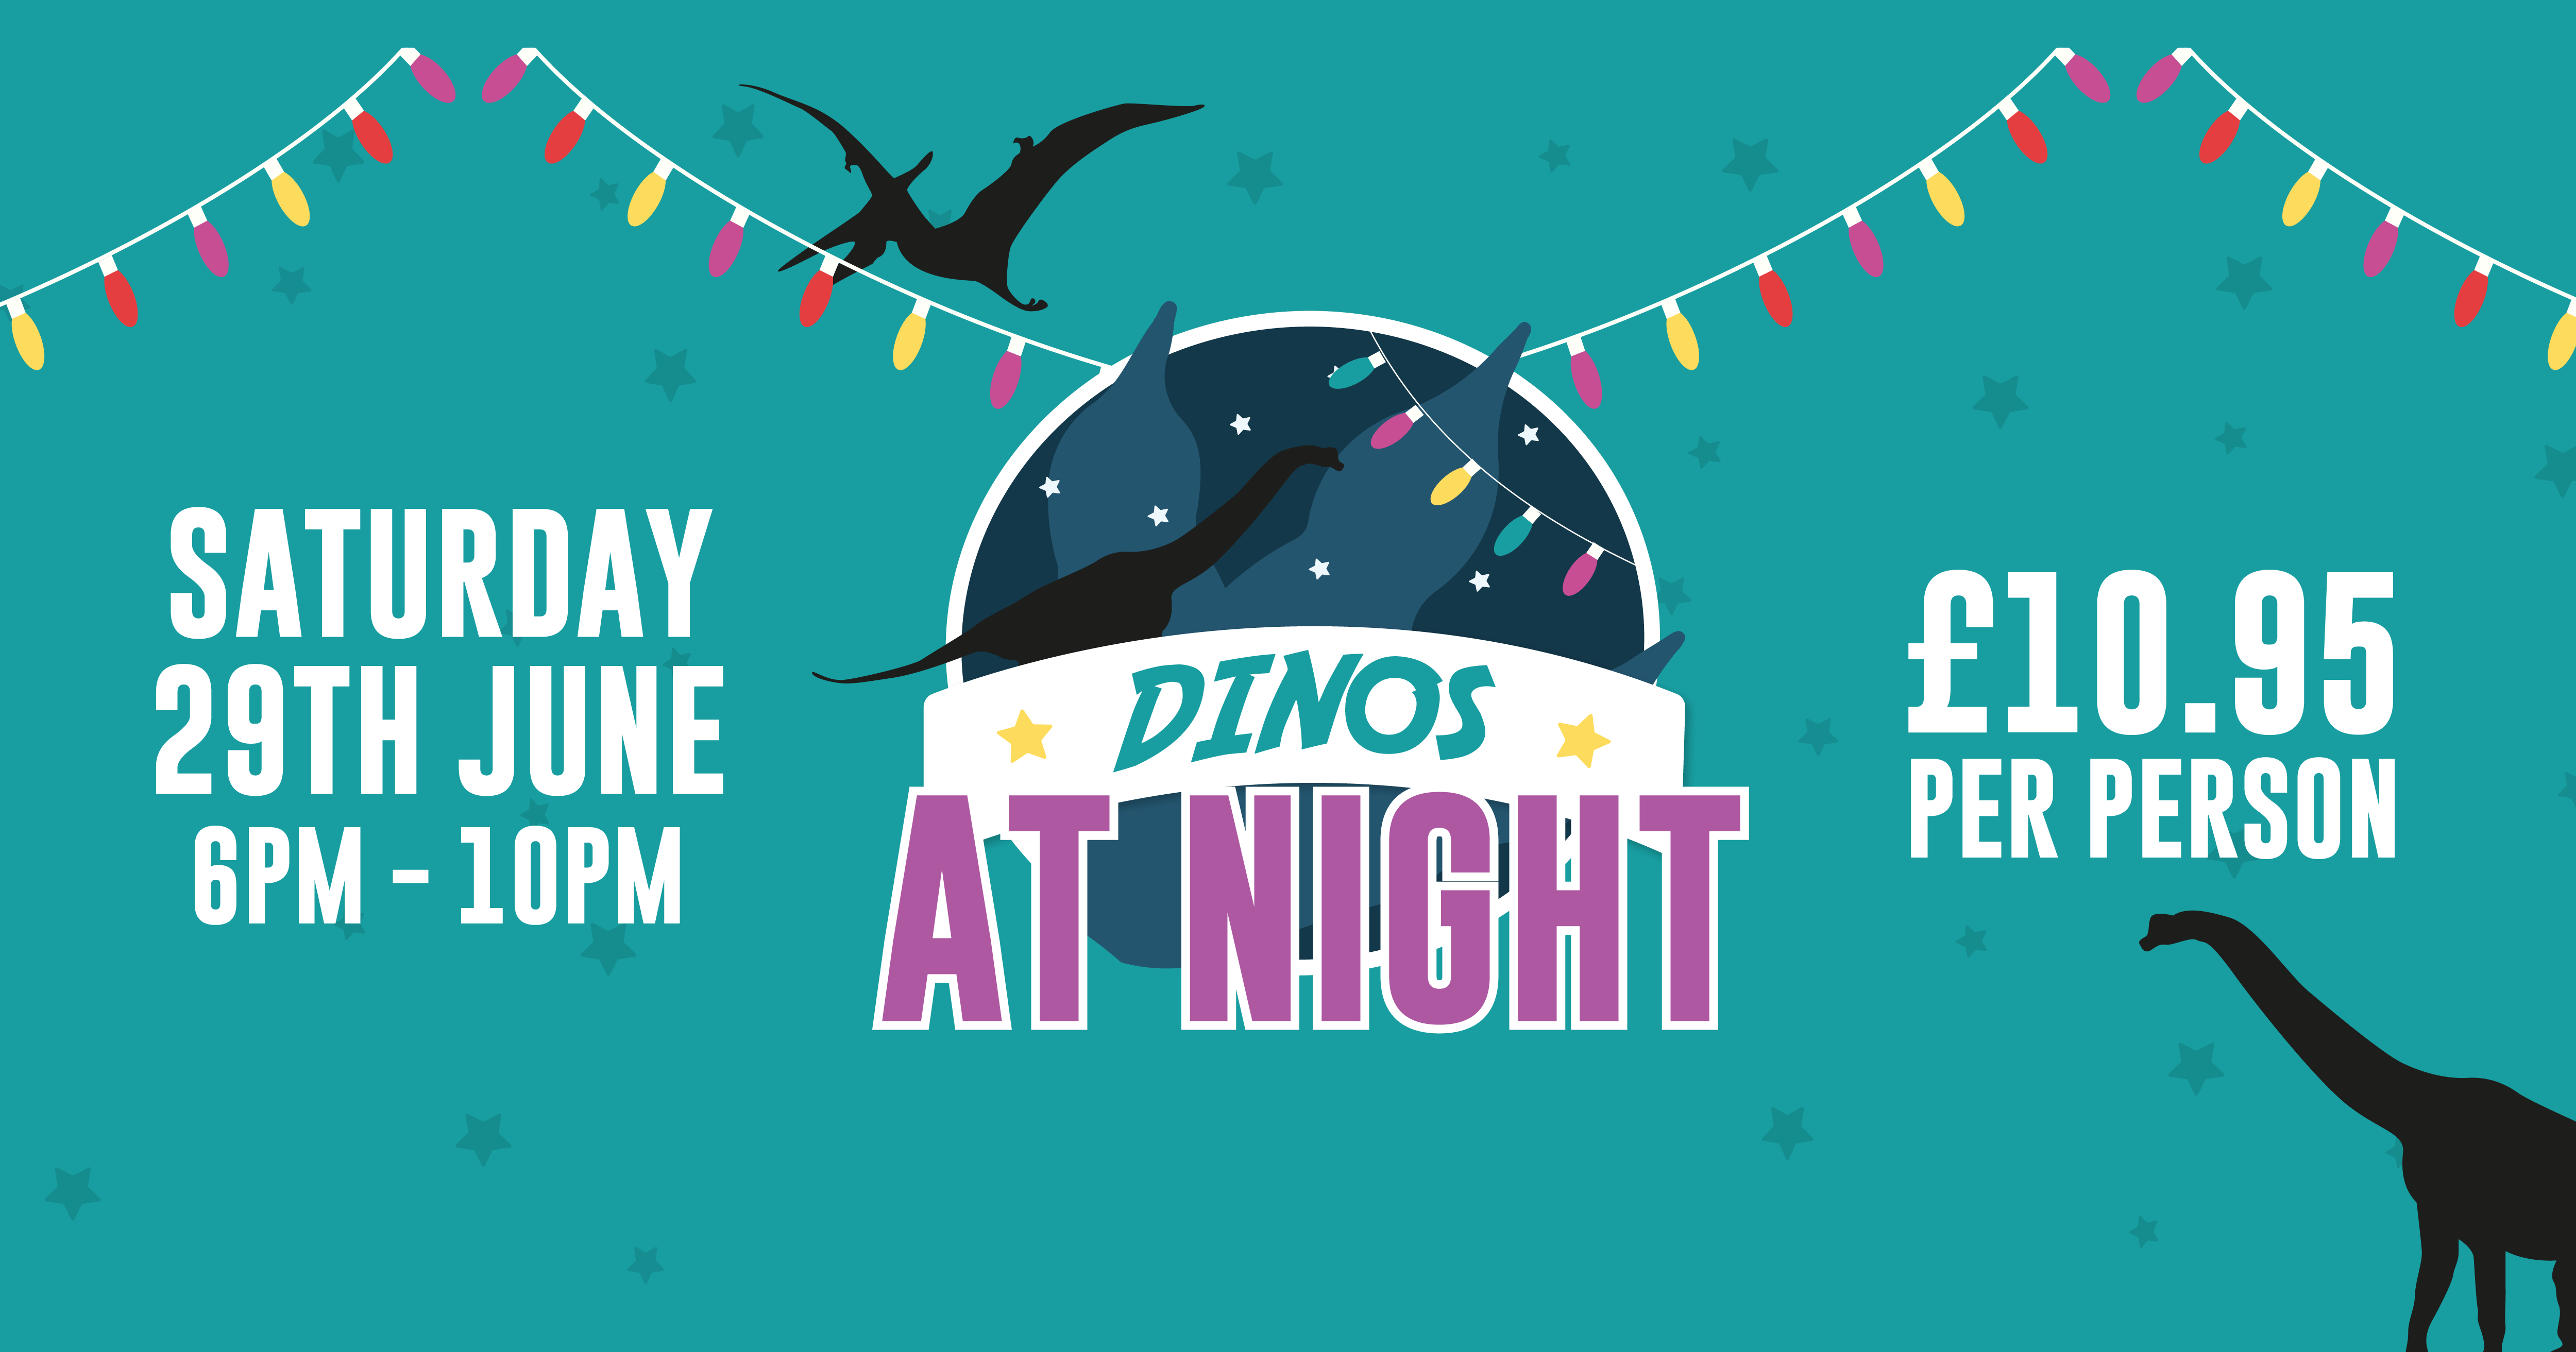 Dinos at Night